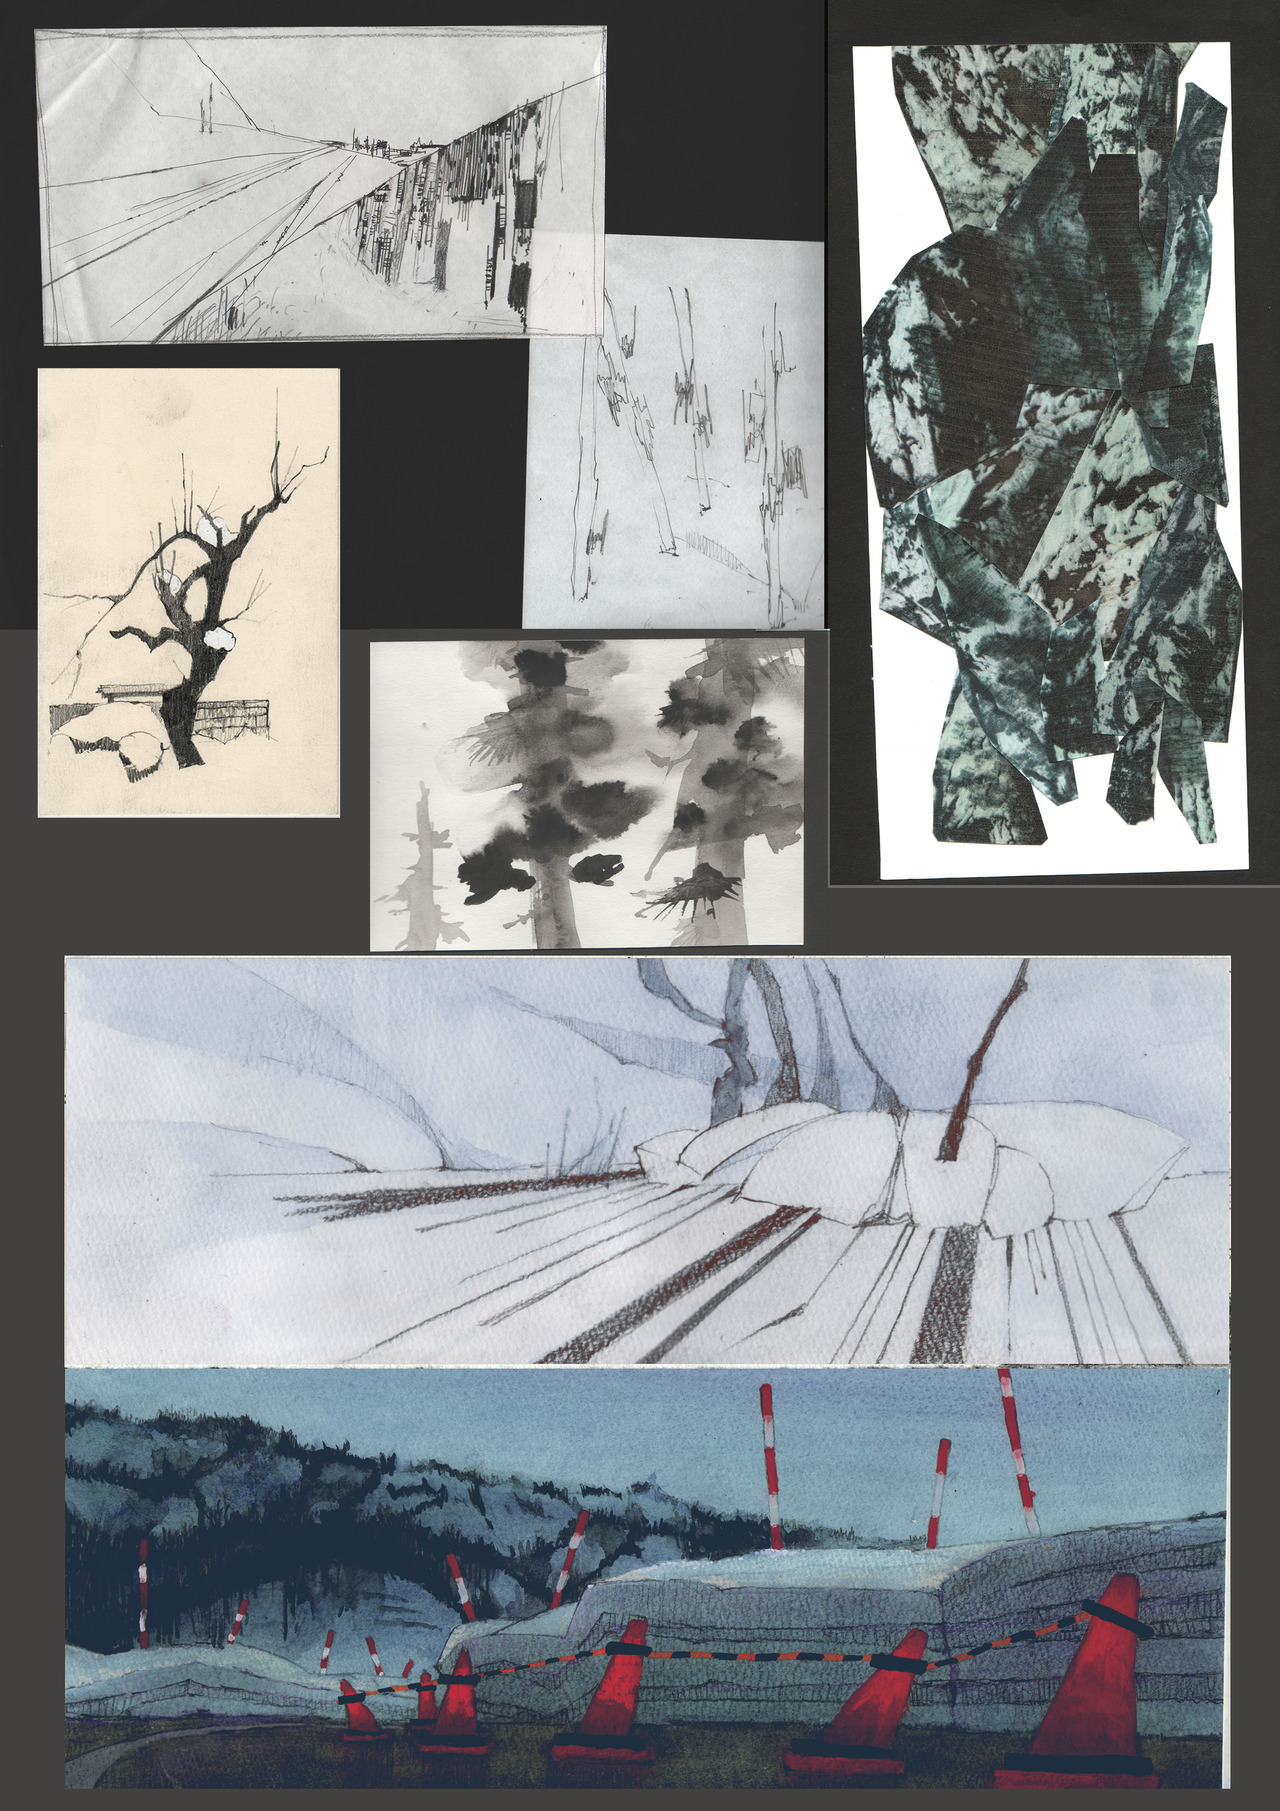 空飛ぶ画家糸川裕志のポップアートの富士山曼荼羅の一点です。 - 本